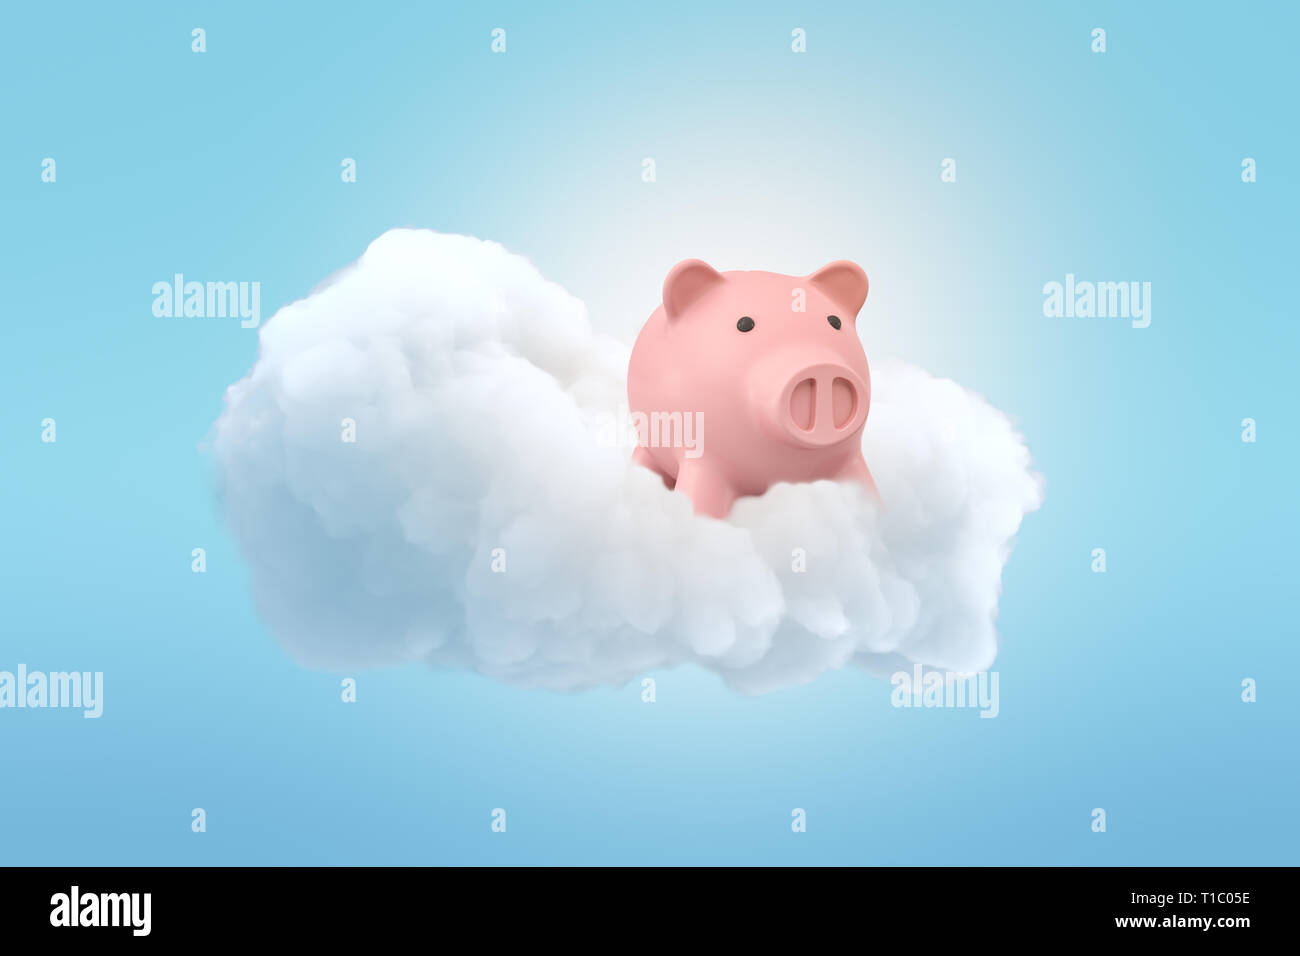 Le rendu 3D d'un cute pink piggy bank on a fluffy nuage blanc dans le ciel bleu. Banque D'Images